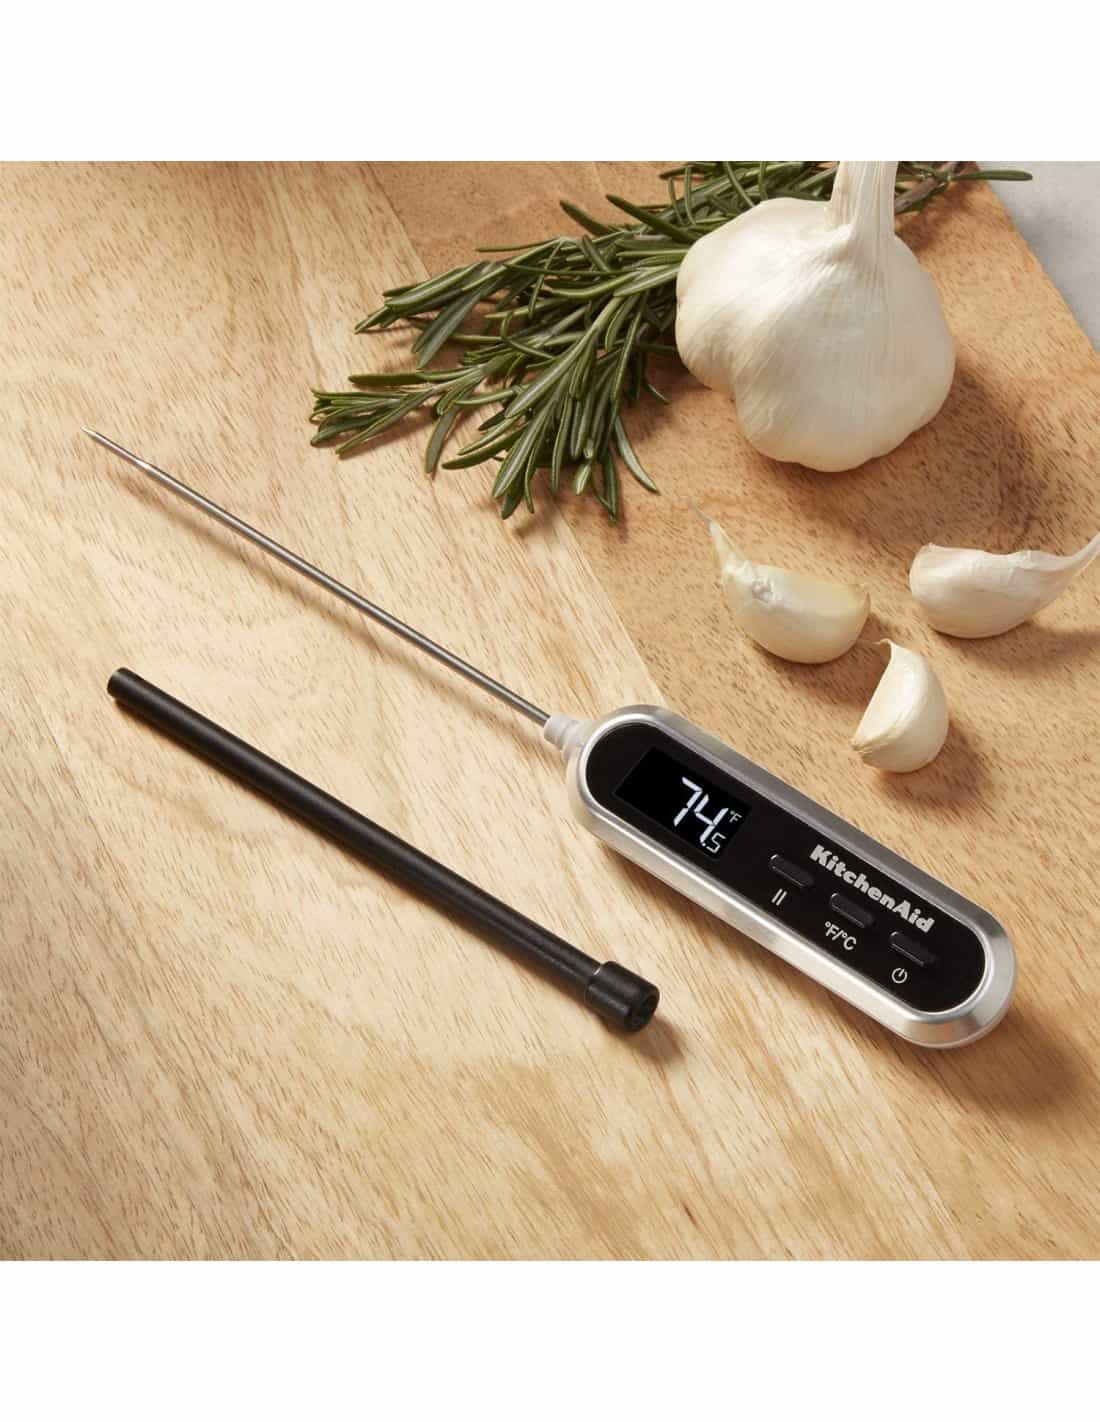 KitchenAid KQ910 Backlit Instant Read Digital Food Kitchen Grill Thermometer, Black